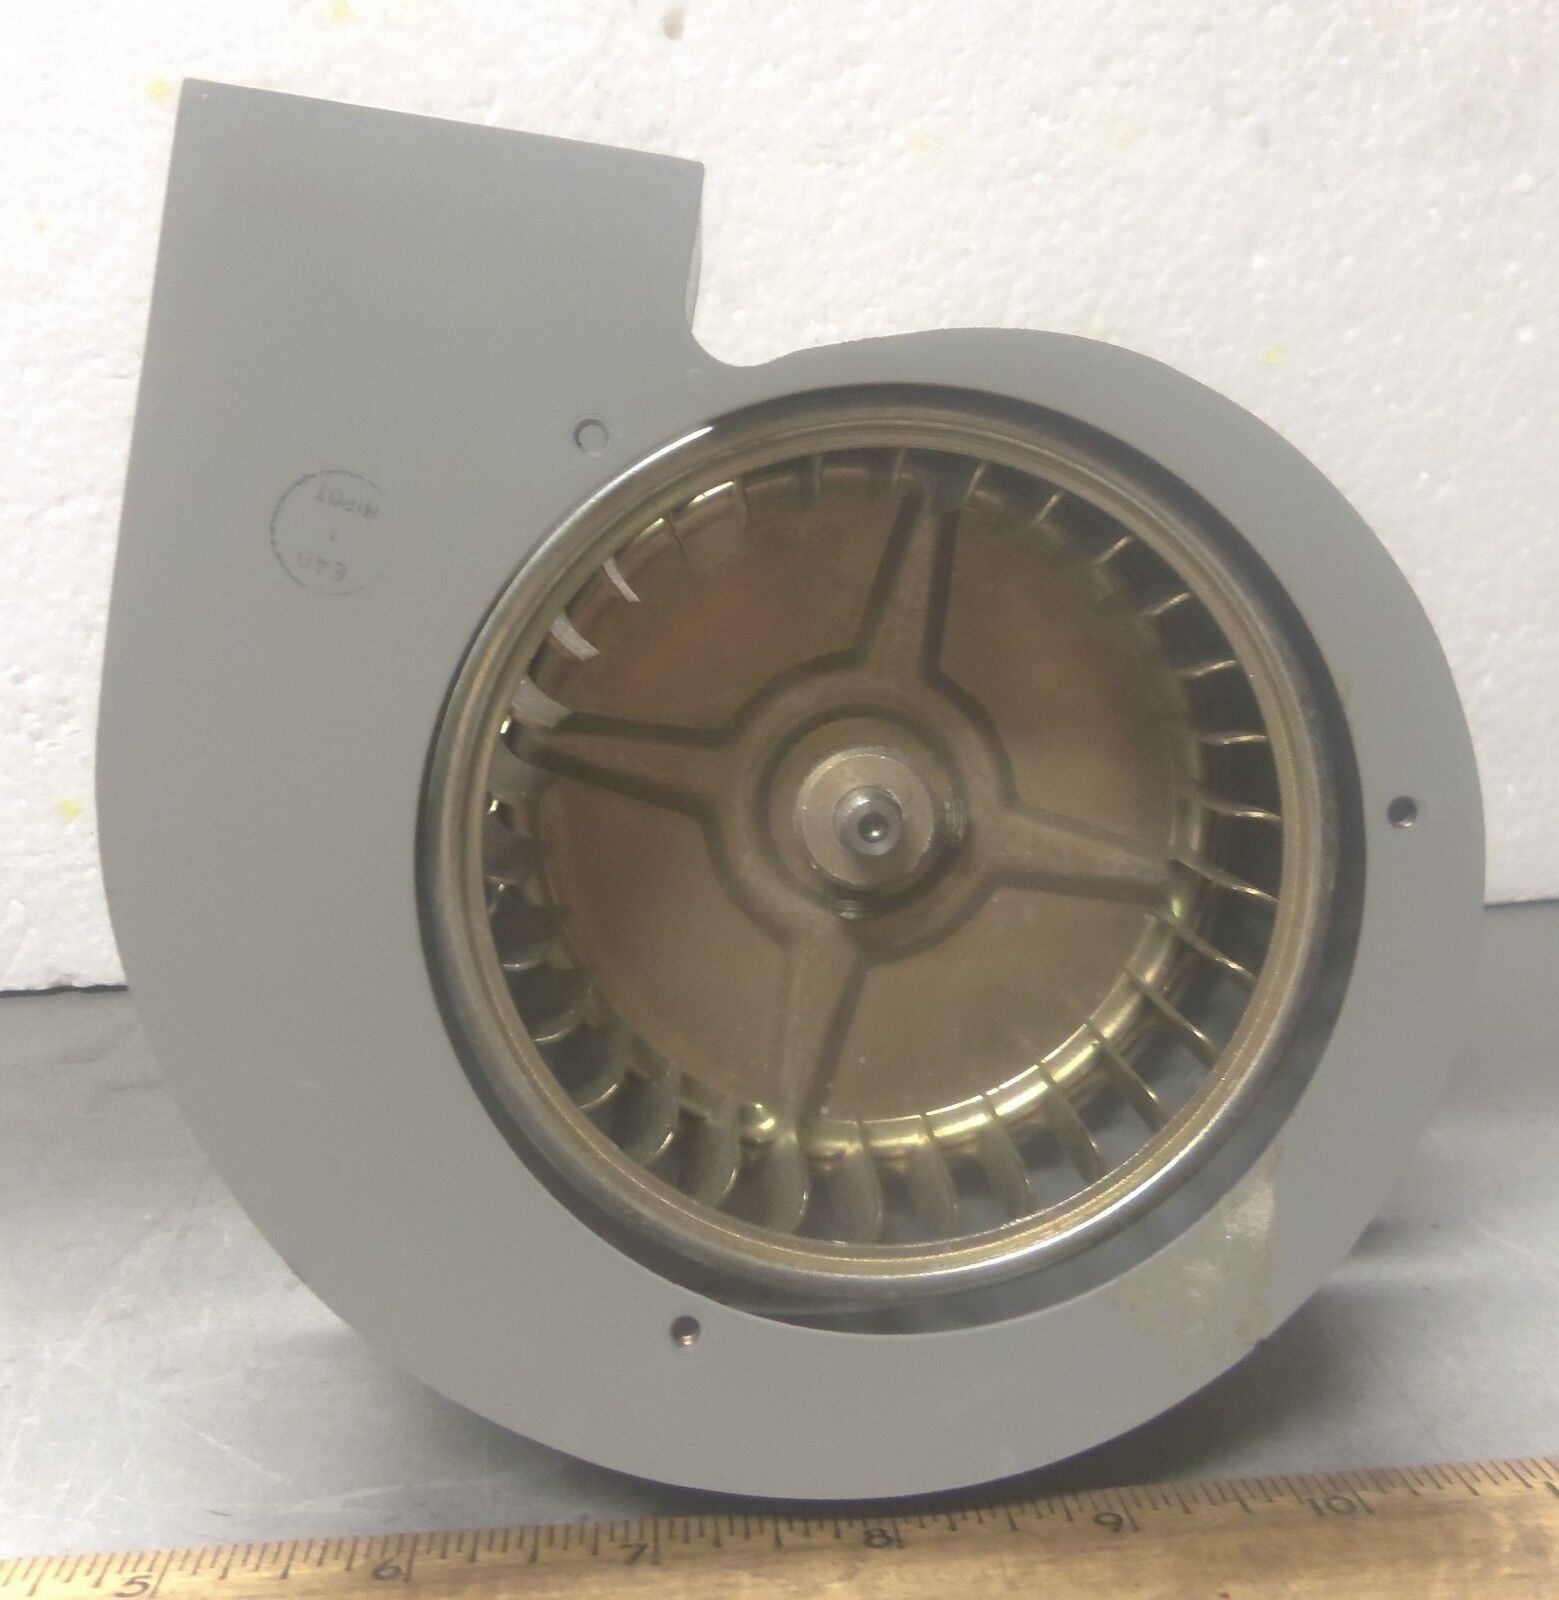 Eastern Air Devices Inc. – Centrifugal Fan / Blower - P/N: B38A7L-33 (NOS)